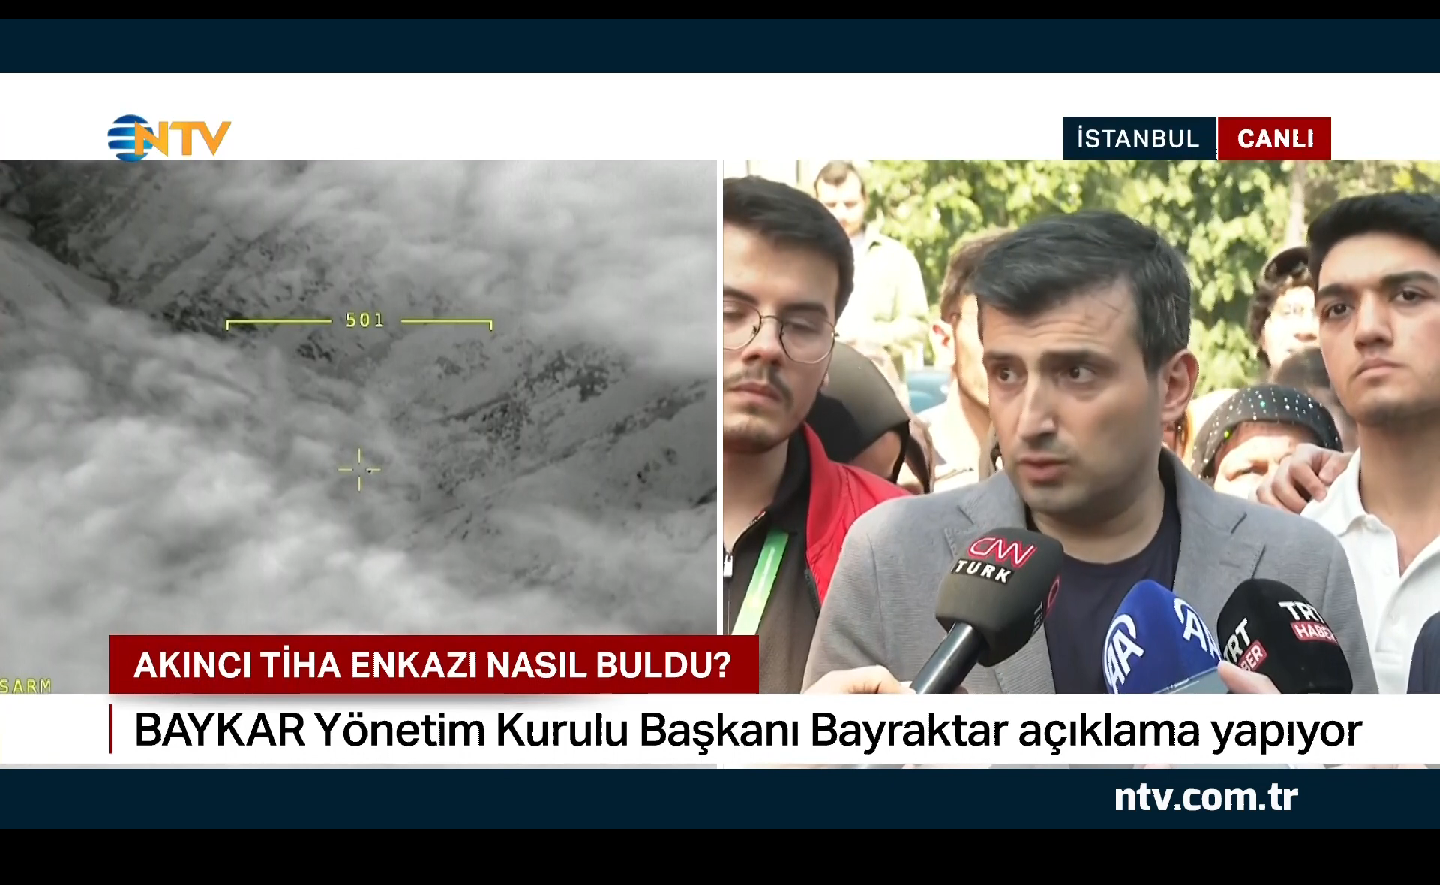 توضیحات سلجوق بایراکتار: آکینجی آذربایجان نیز آماده بود اما تهران از  ترکیه کمک خواسته